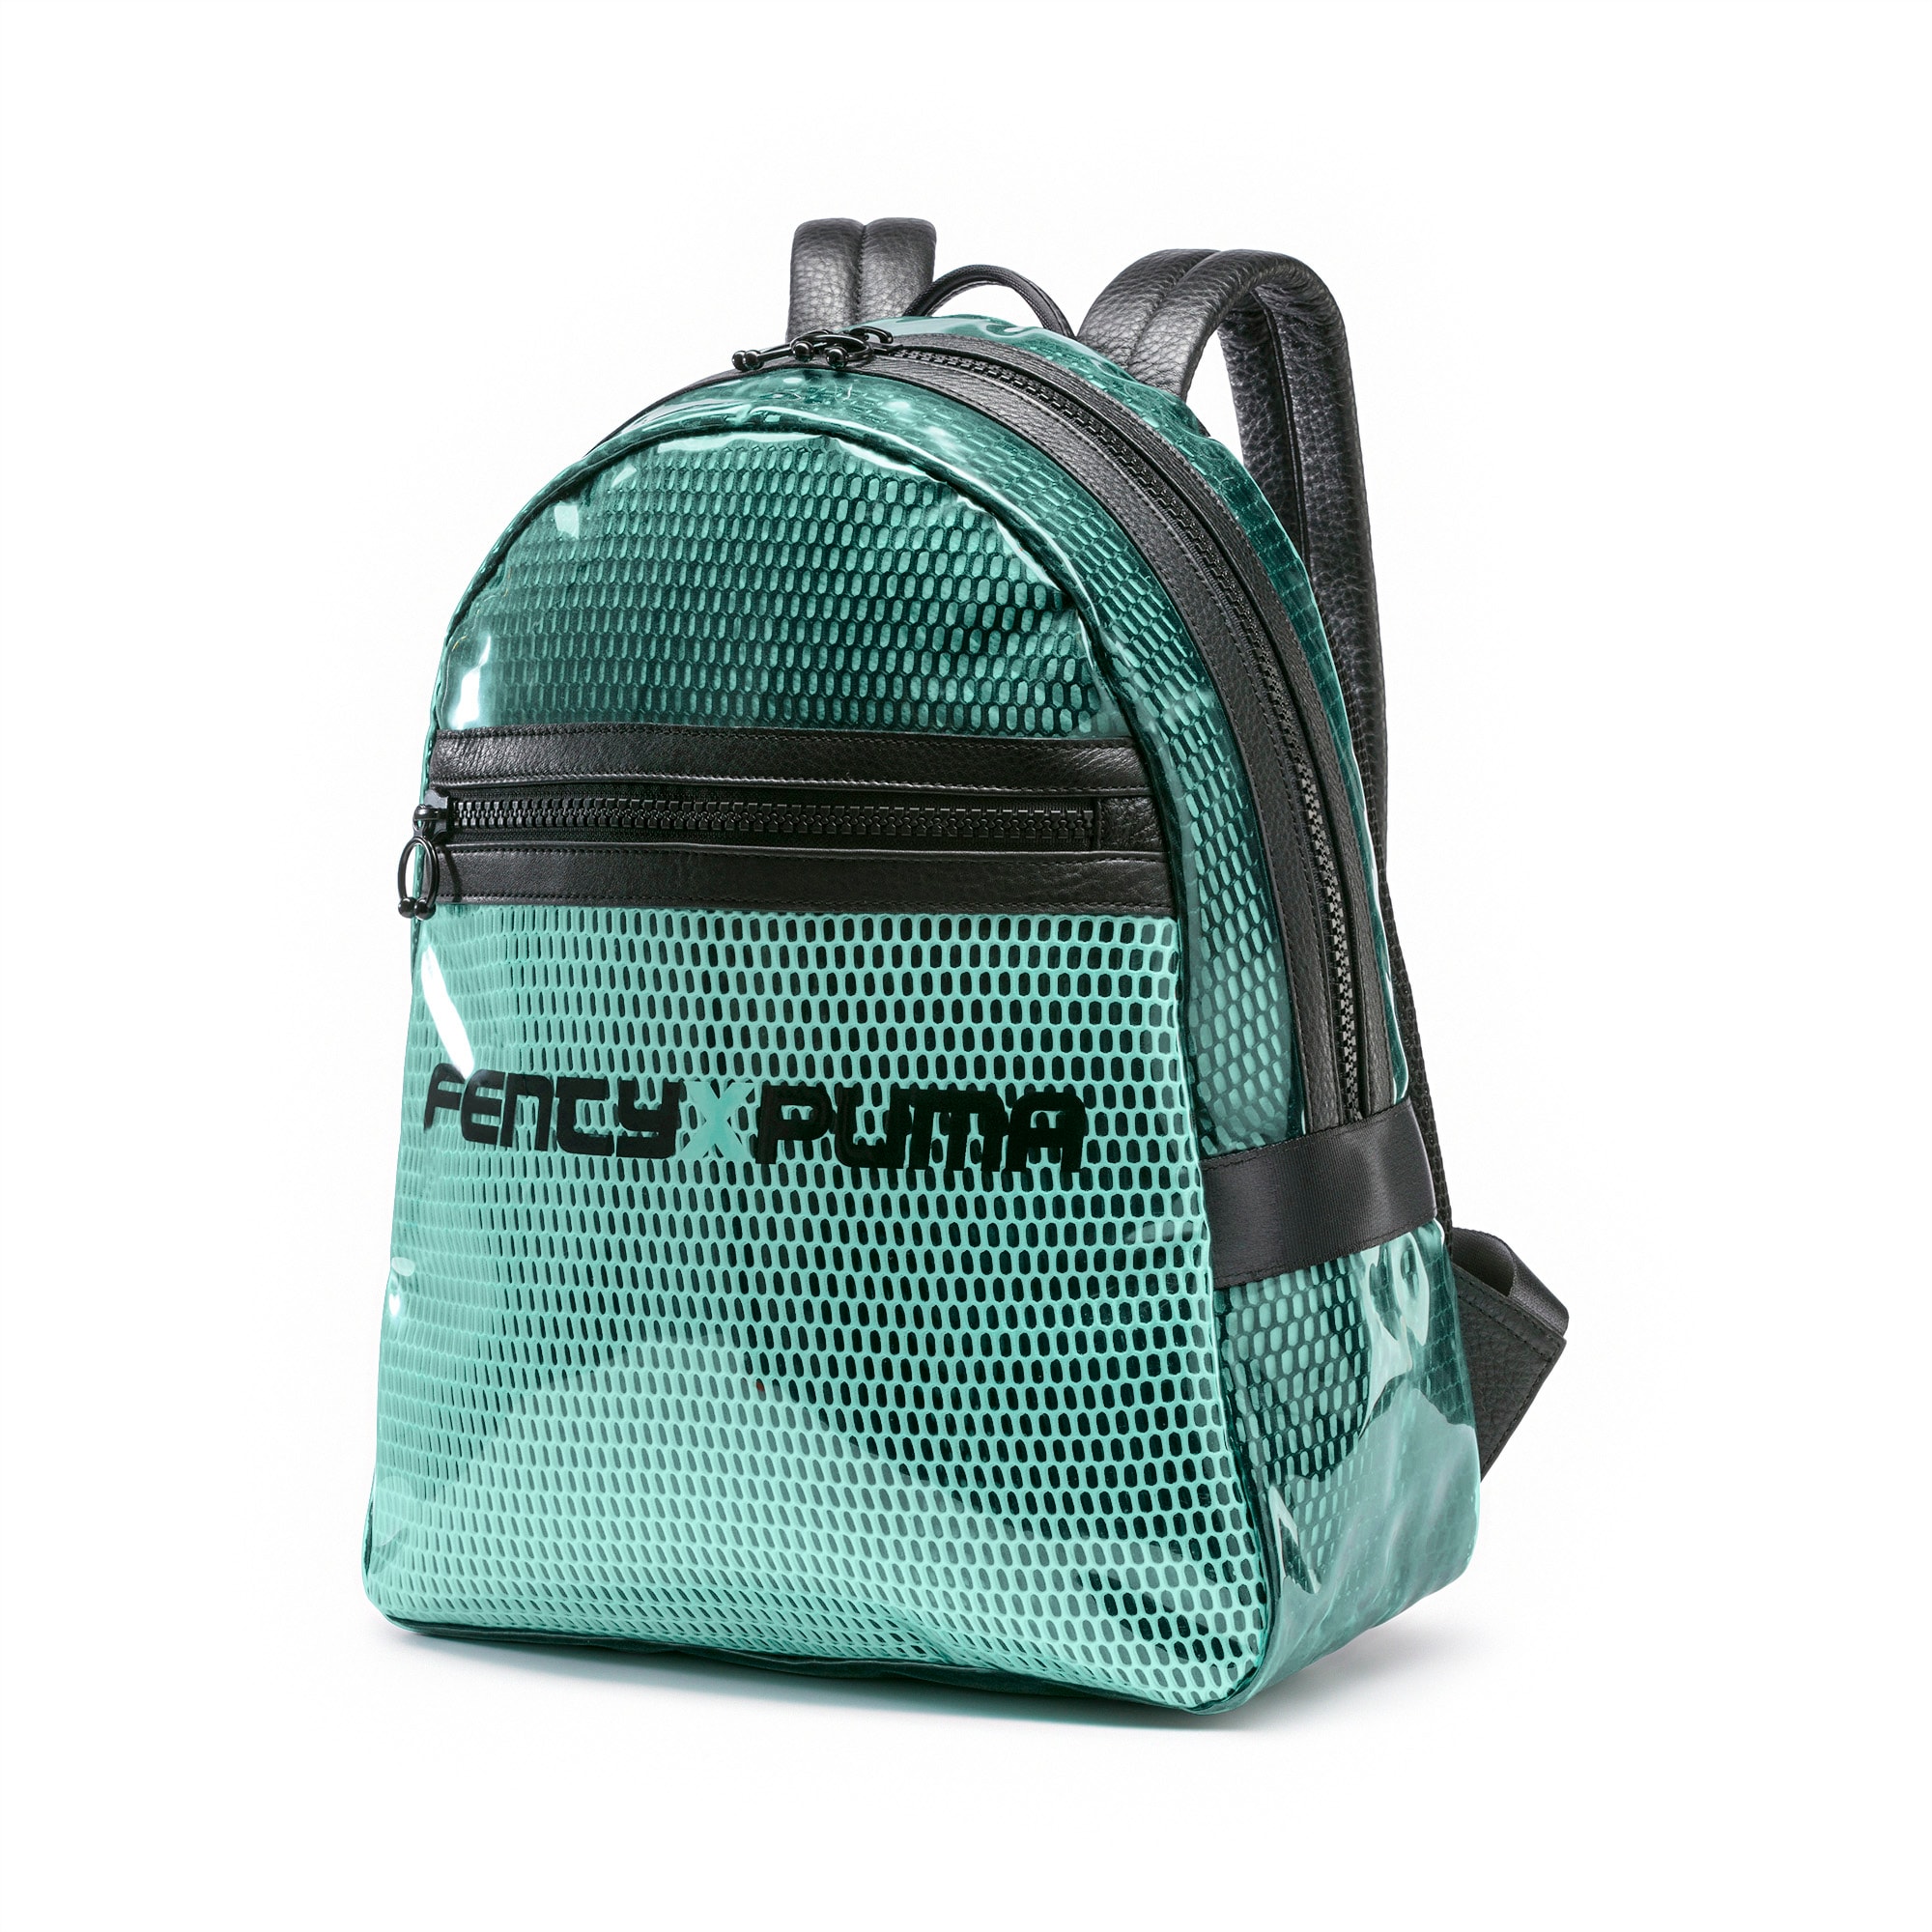 puma unisex grey backpack